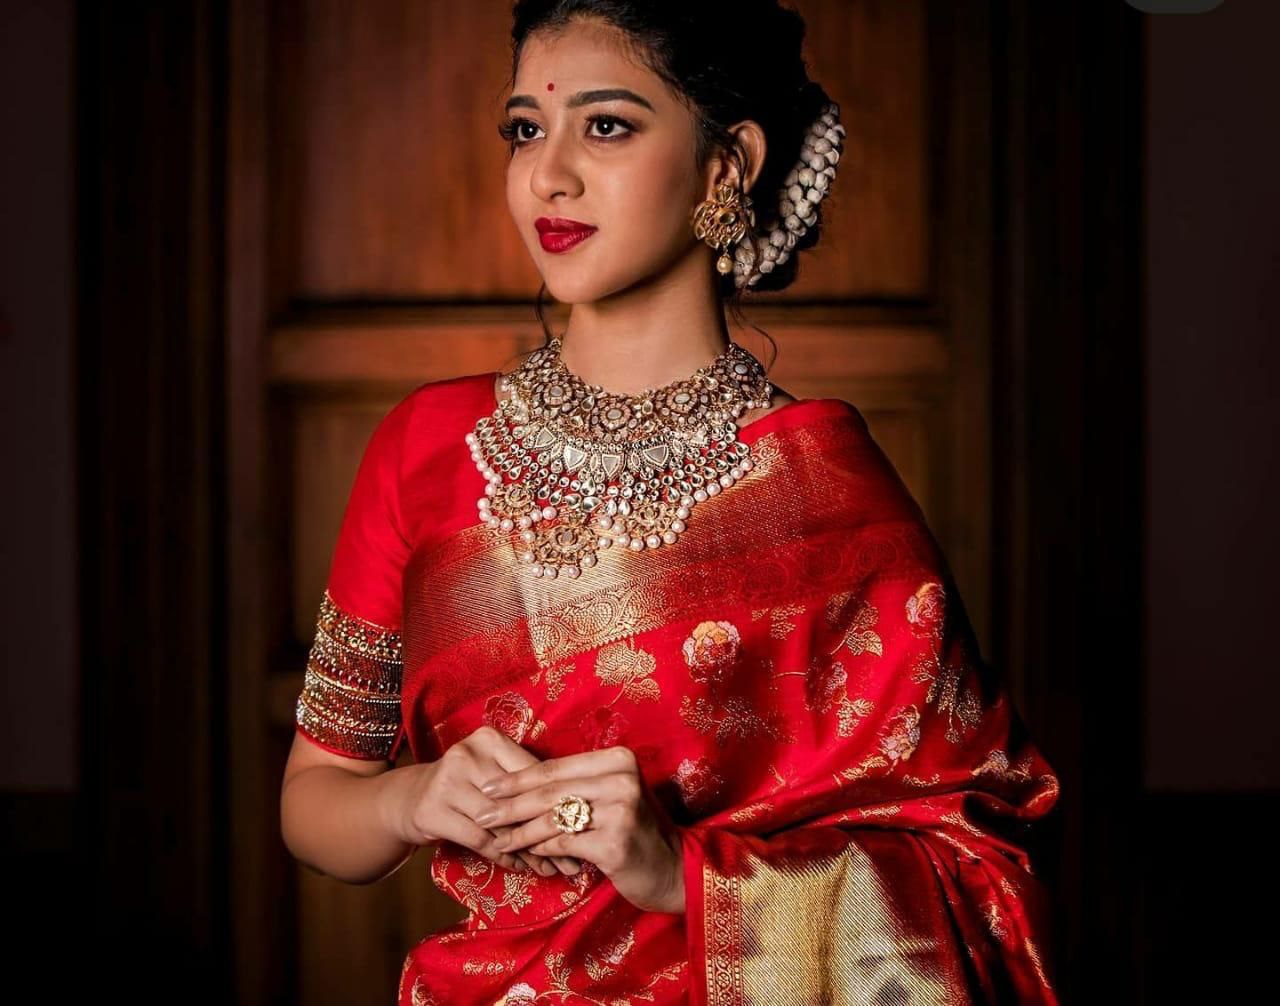 Tremendous Red Soft Banarasi Silk Saree With Stunner Blouse Piece - Colorful Saree